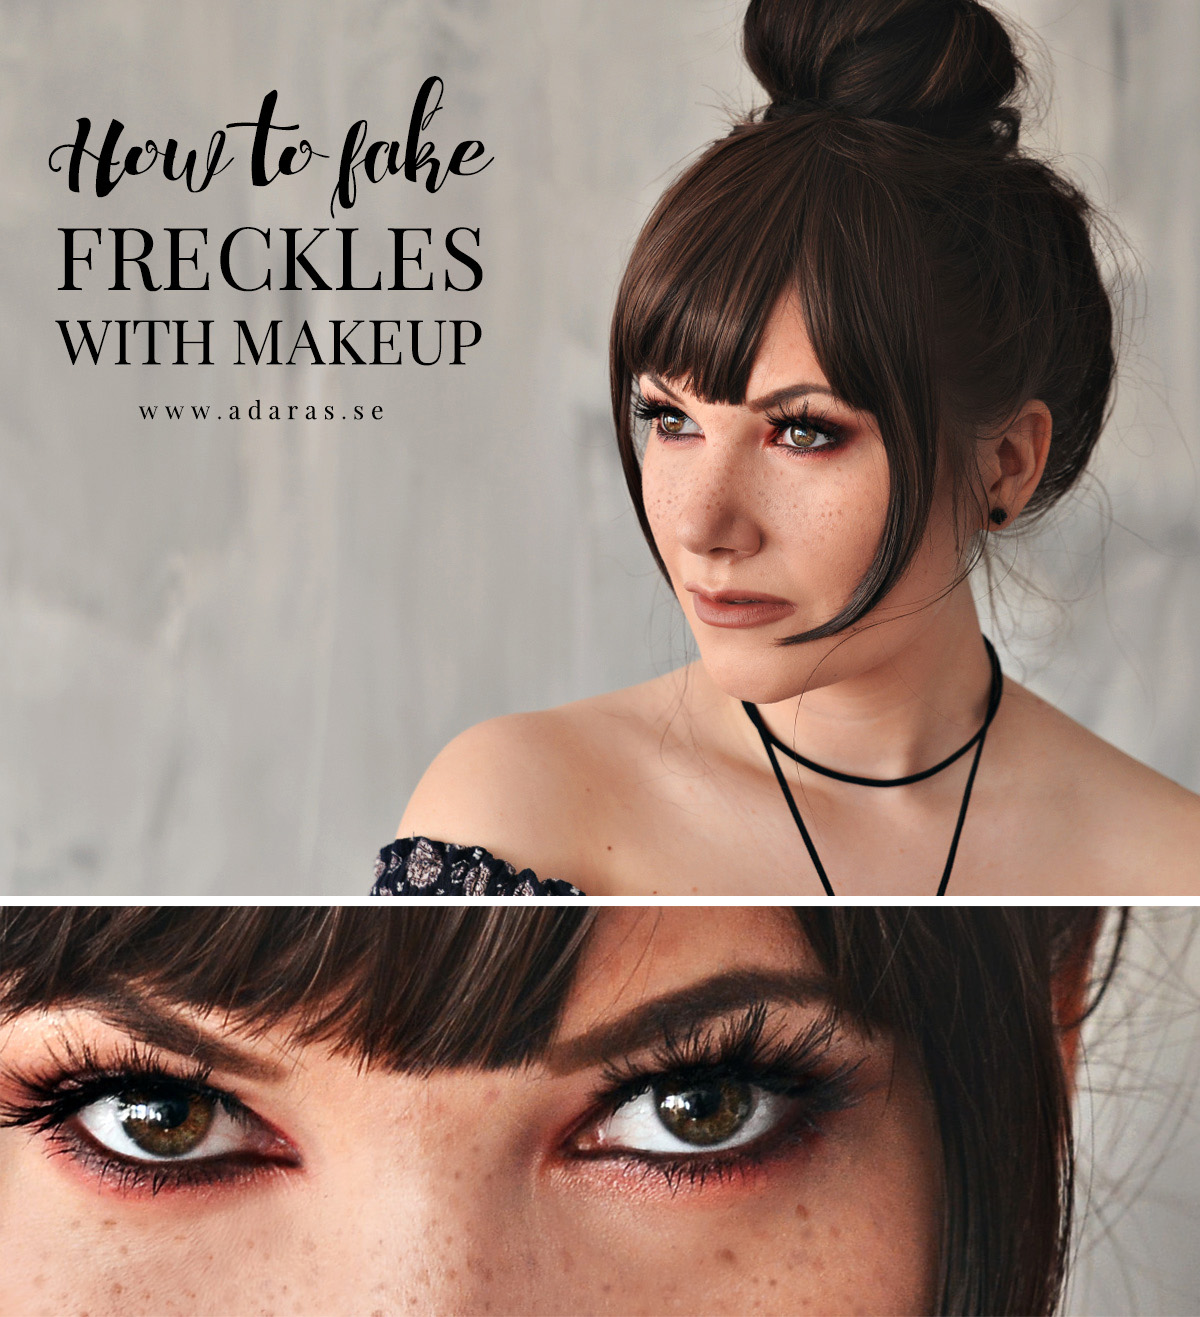 Fuska fram fräknar med makeup - Howto: Freckles with makeup